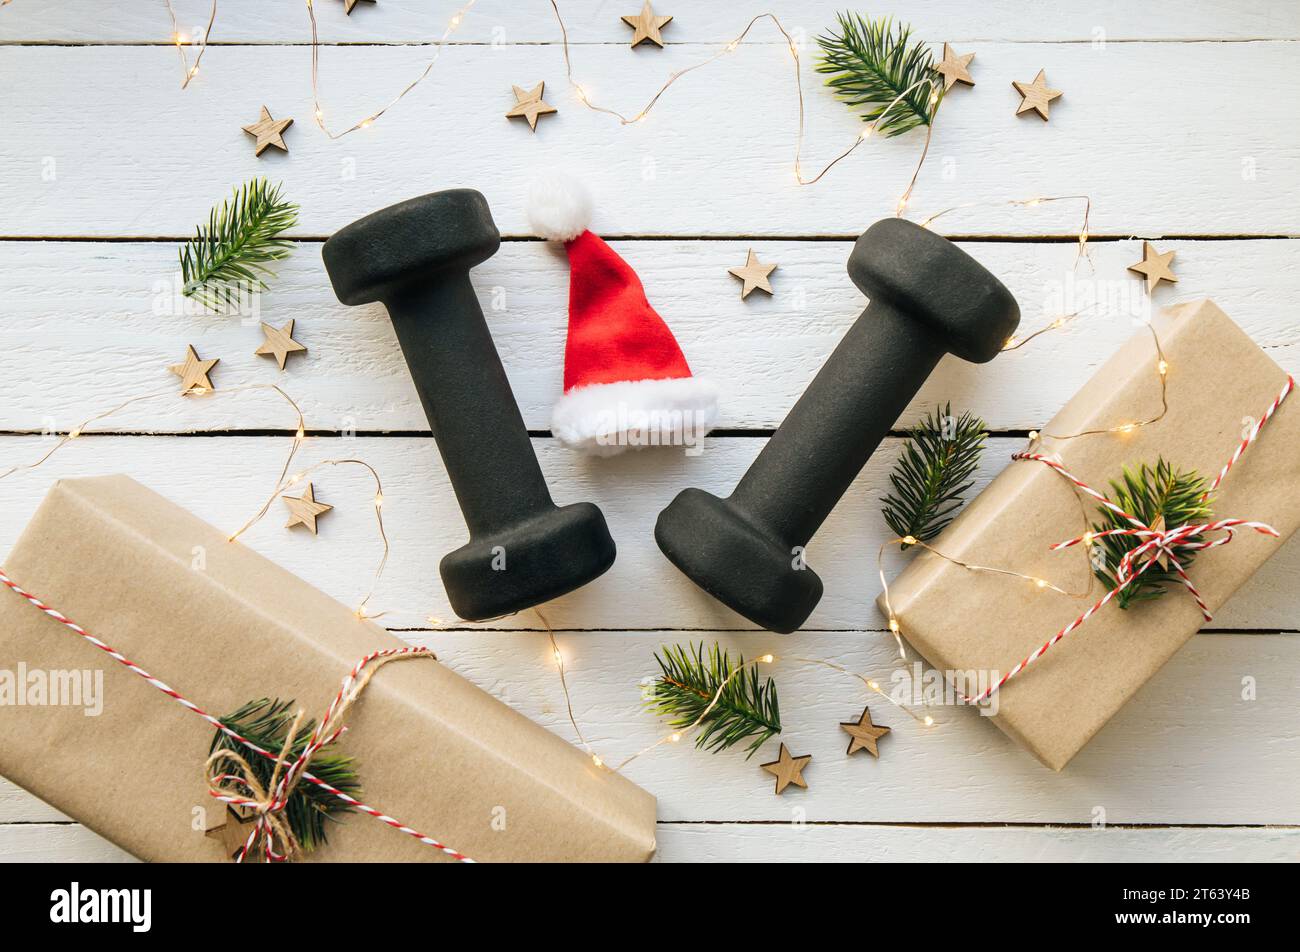 Stile di vita sano durante il periodo di festa di Natale concetto. Manubri neri con ornamenti natalizi su sfondo bianco in legno. Foto Stock